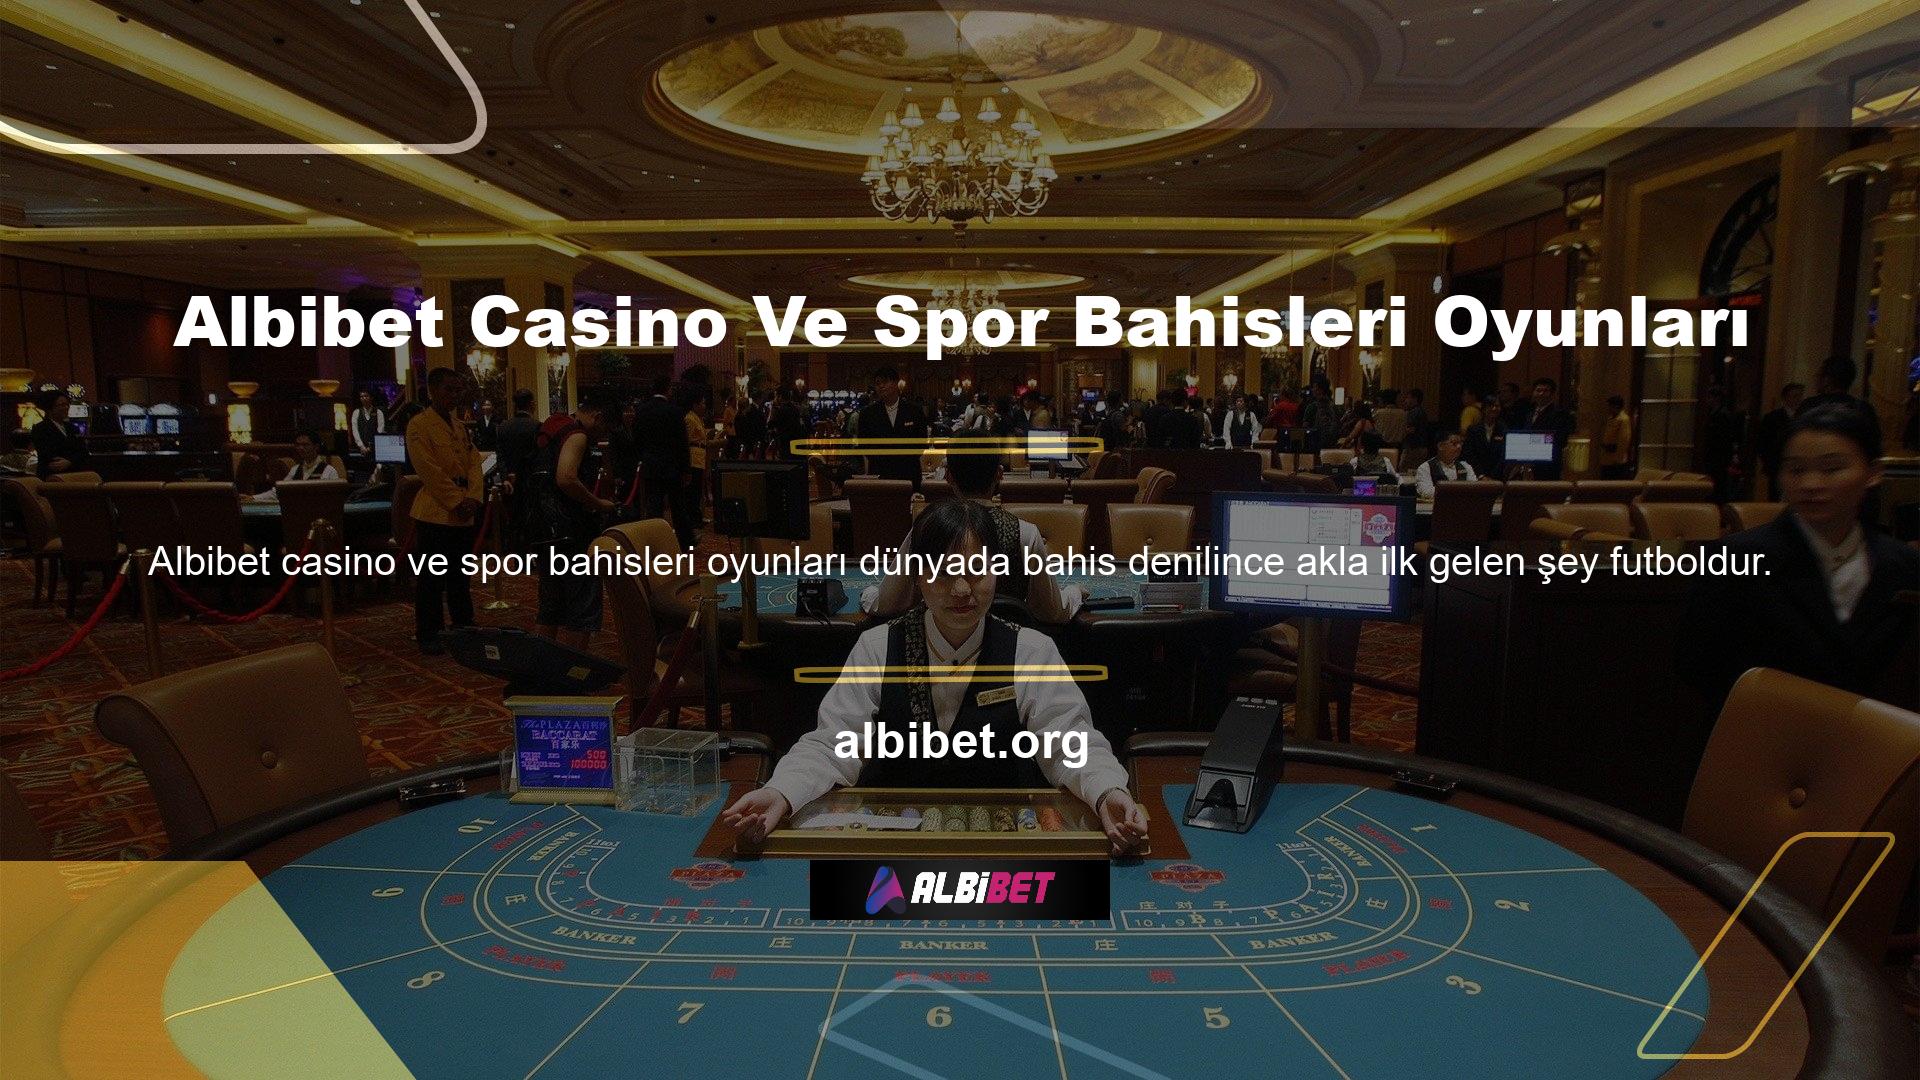 Öte yandan, bahis sitesi ve casino Albibet değerli üyeliğini sadece futbolla sınırlandırmıyor